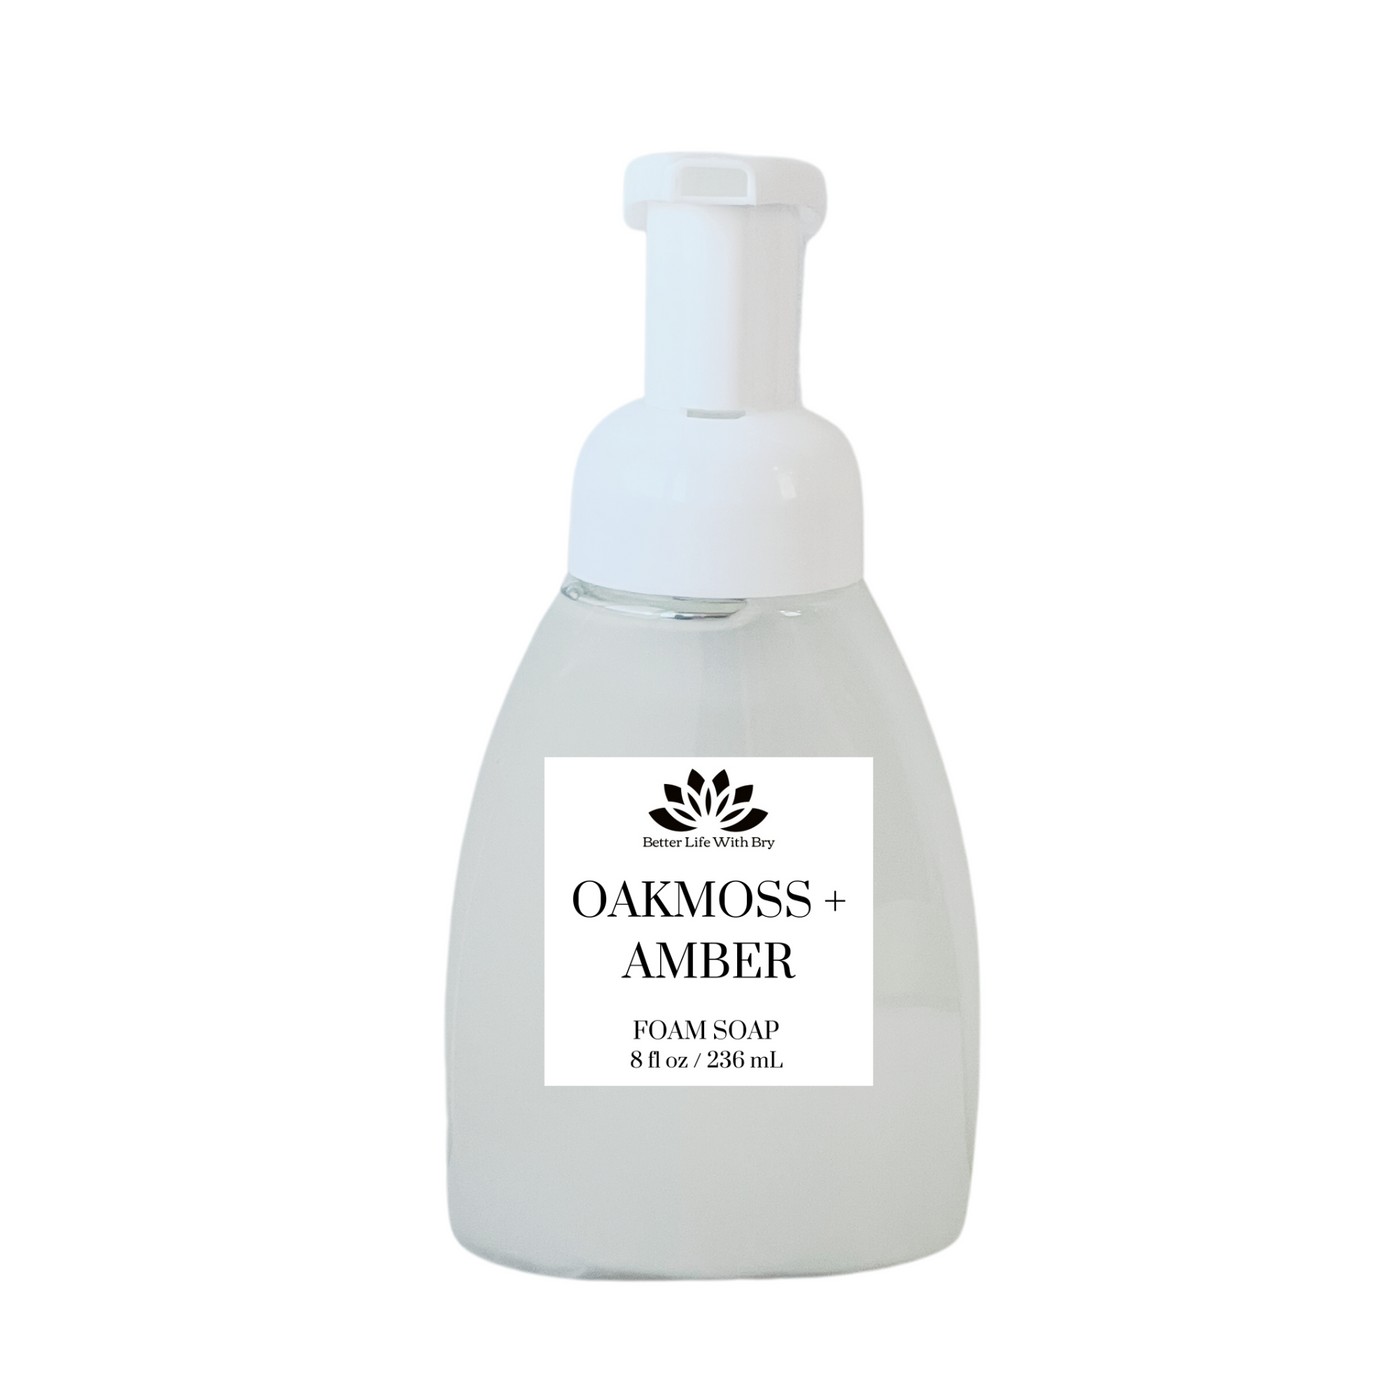 Oakmoss + Amber Foam Soap